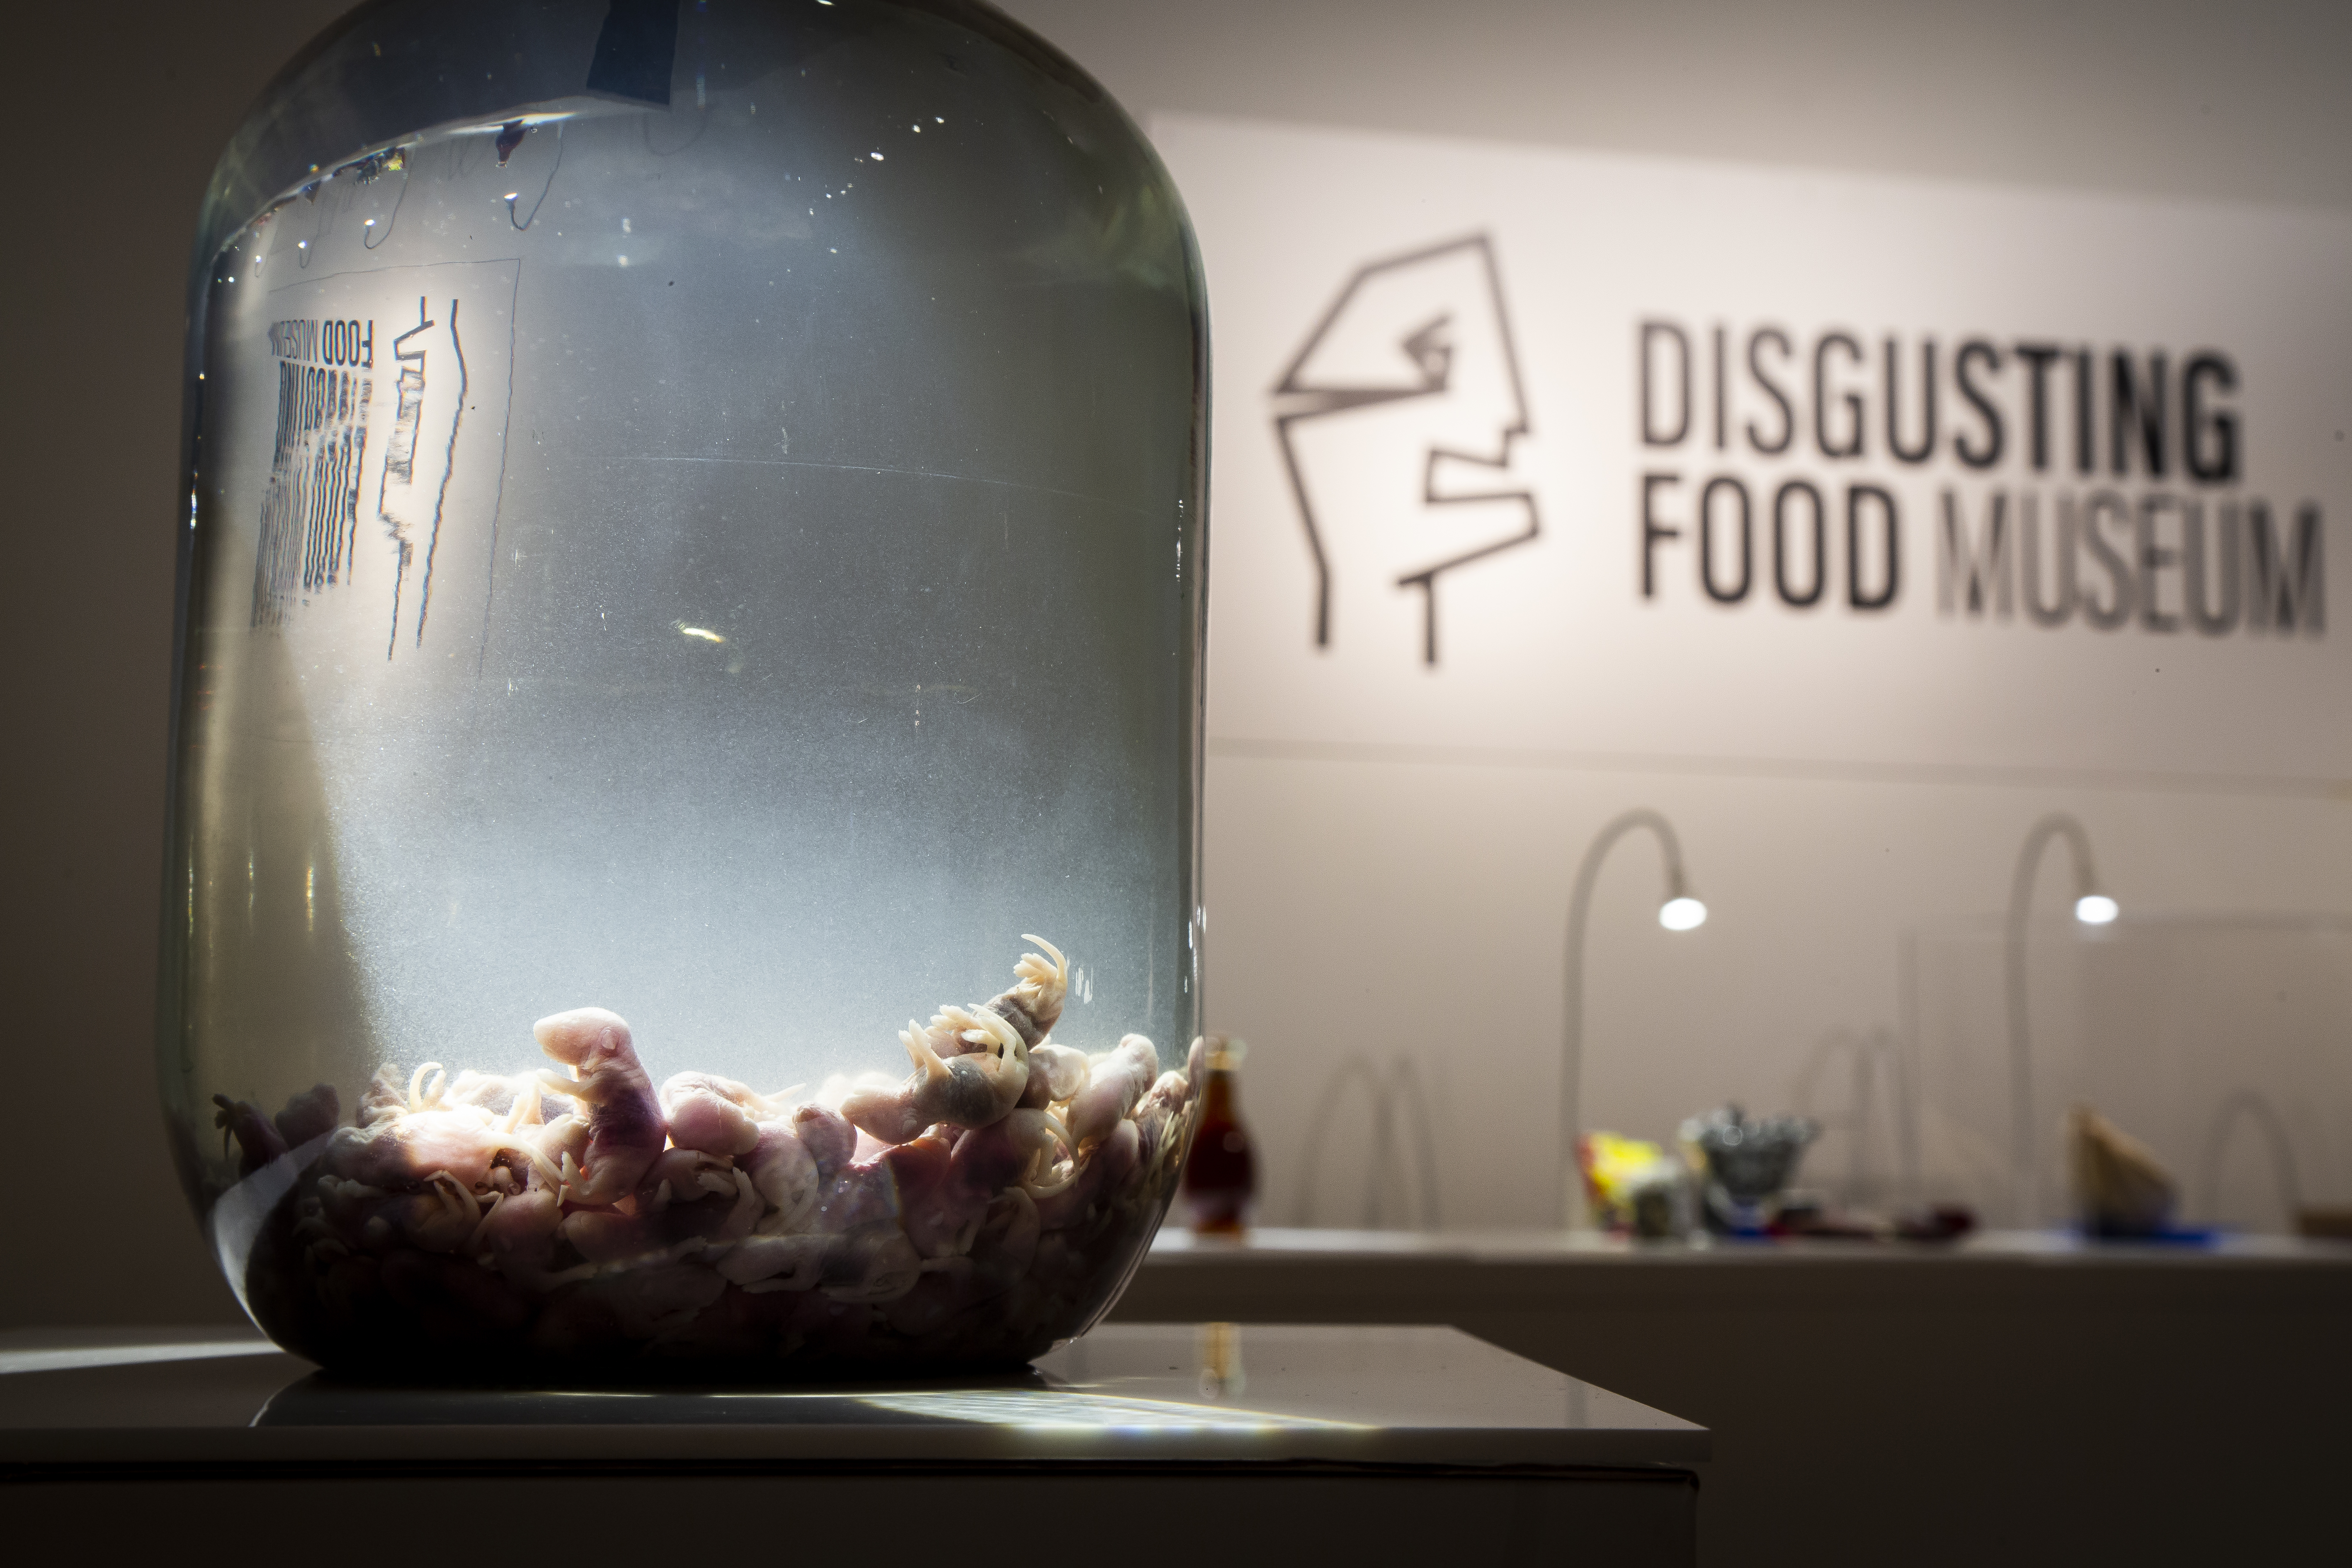 Sweden Disgusting Food Museum